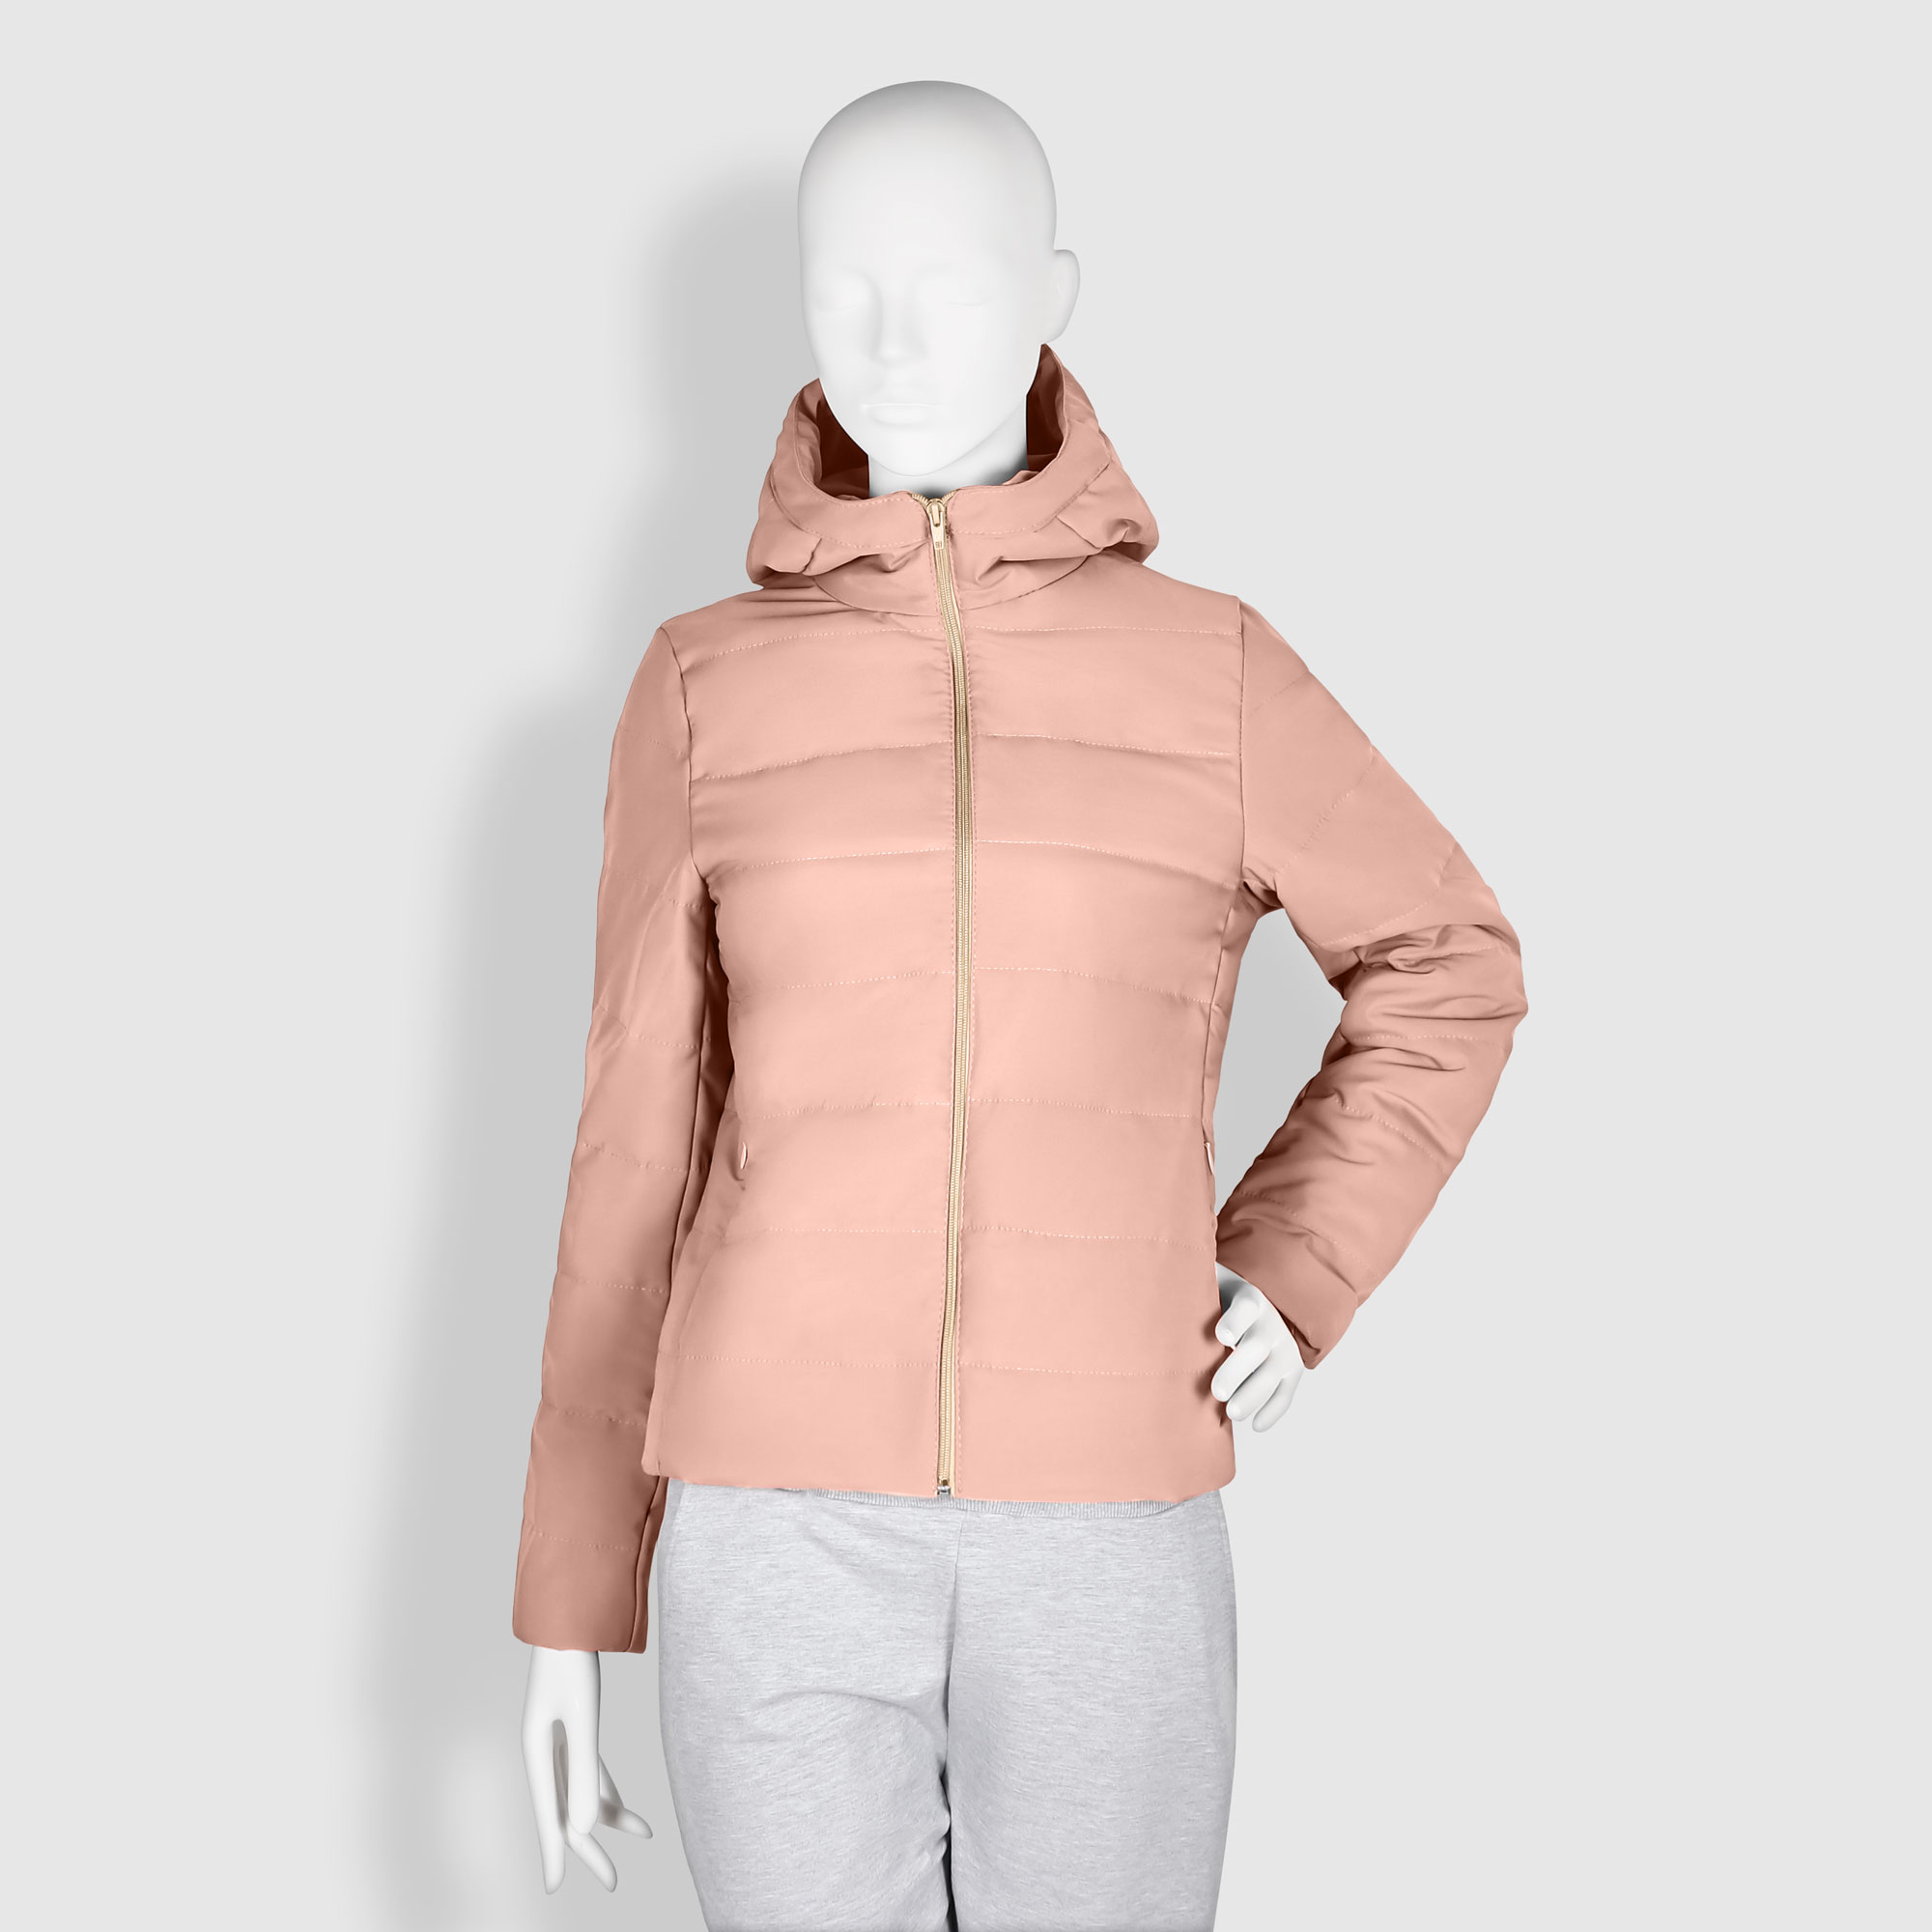 Женская куртка Мастер Пошива утепленная пудровая, цвет пудровый, размер XL